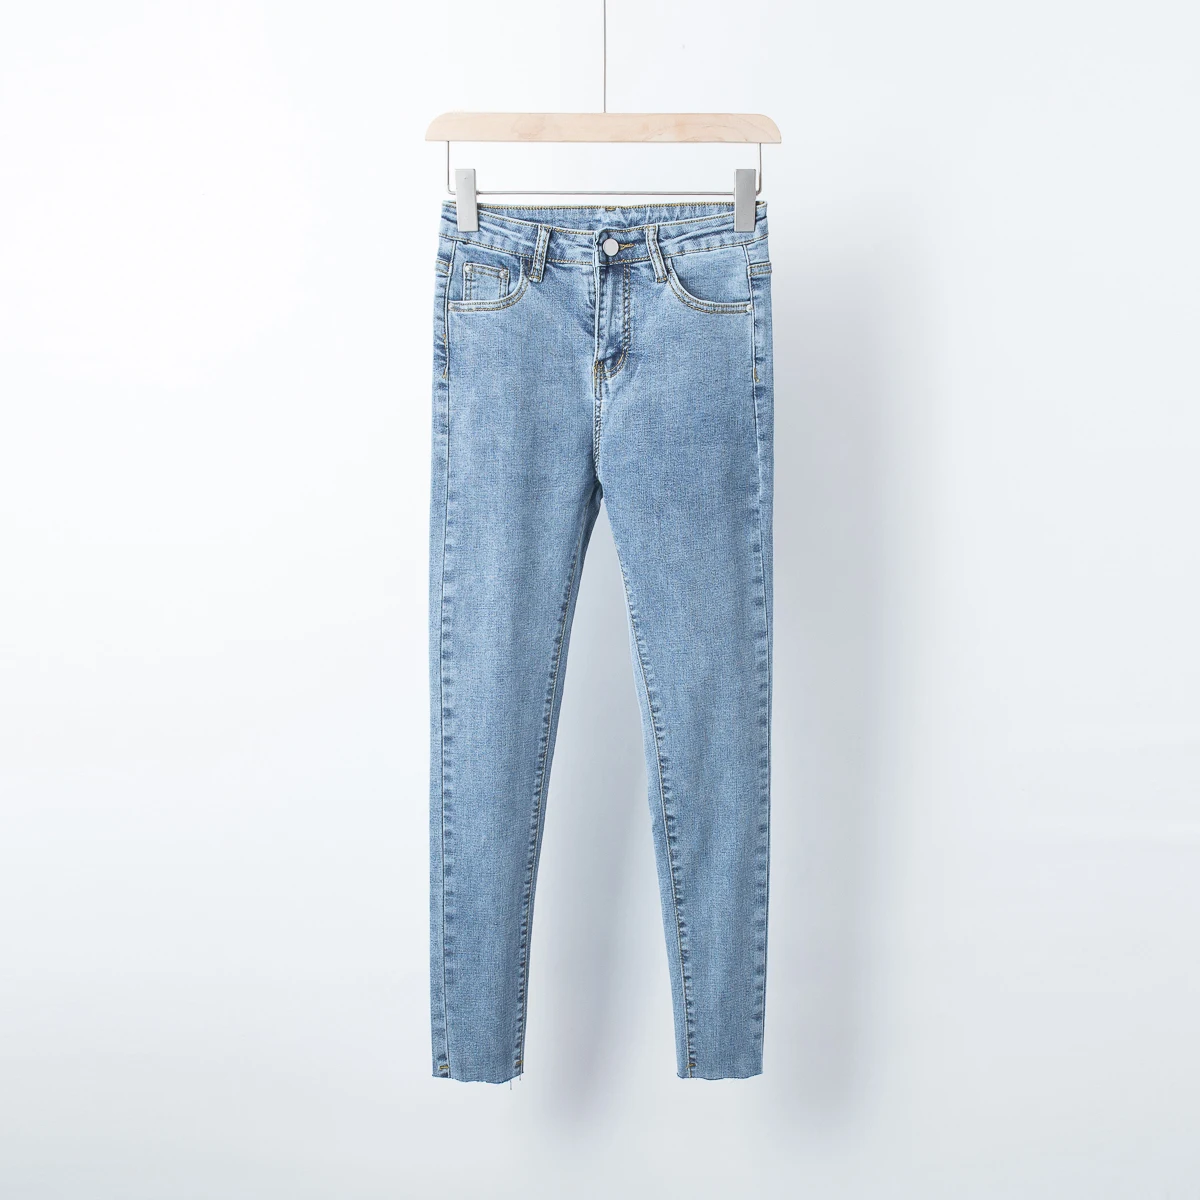 AOEMQ осенние брюки узкие облегающие зауженные брюки джинсовые синие с карманами удобные узкие брюки размера плюс женская одежда - Цвет: blue